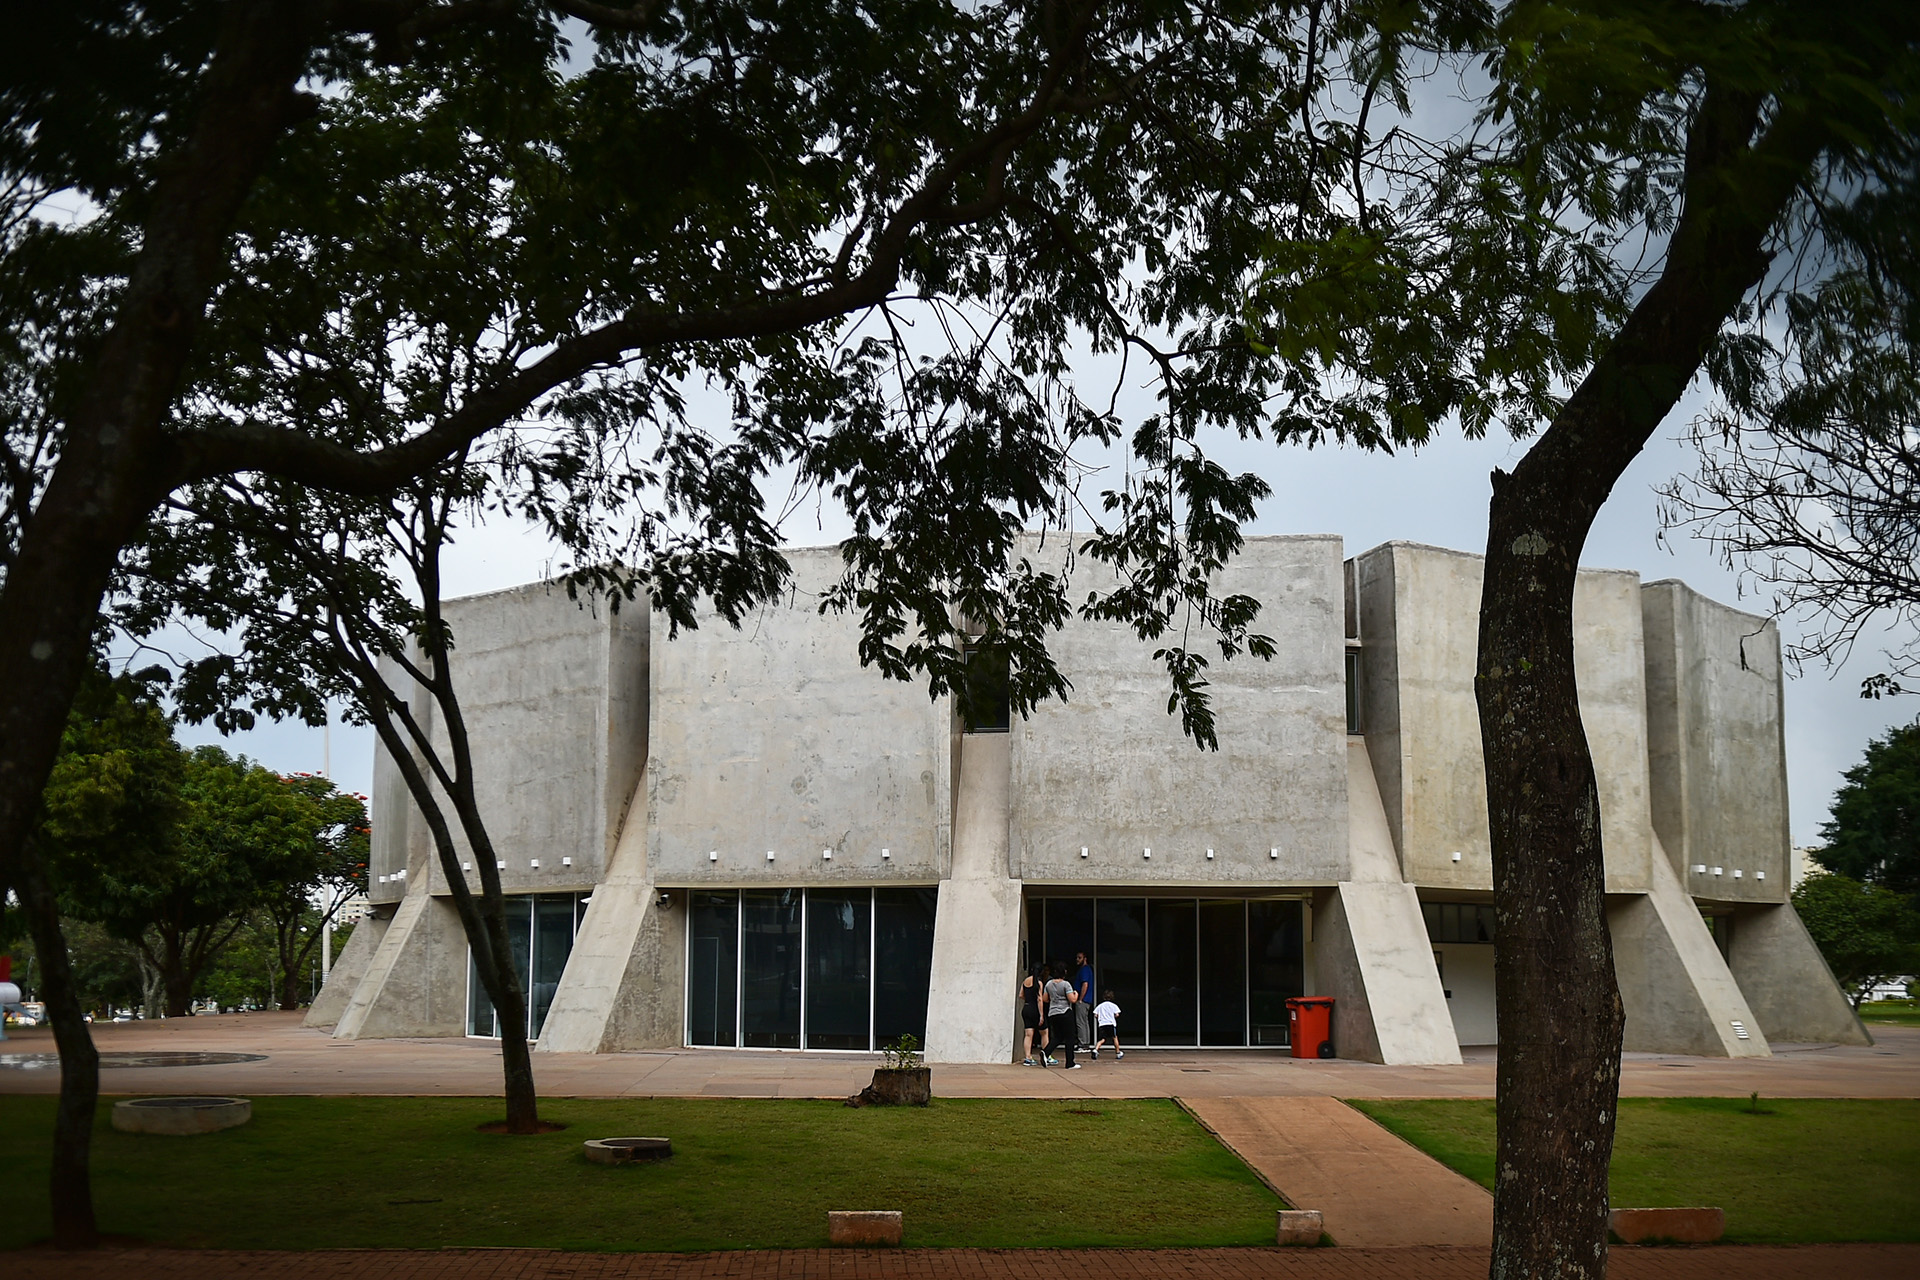 Estarão abertas a partir desta sexta-feira (18) as inscrições para o minicurso Astronomia para Apressados, do Planetário de Brasília. As inscrições vão até quarta-feira (23), das 8 às 18 horas.